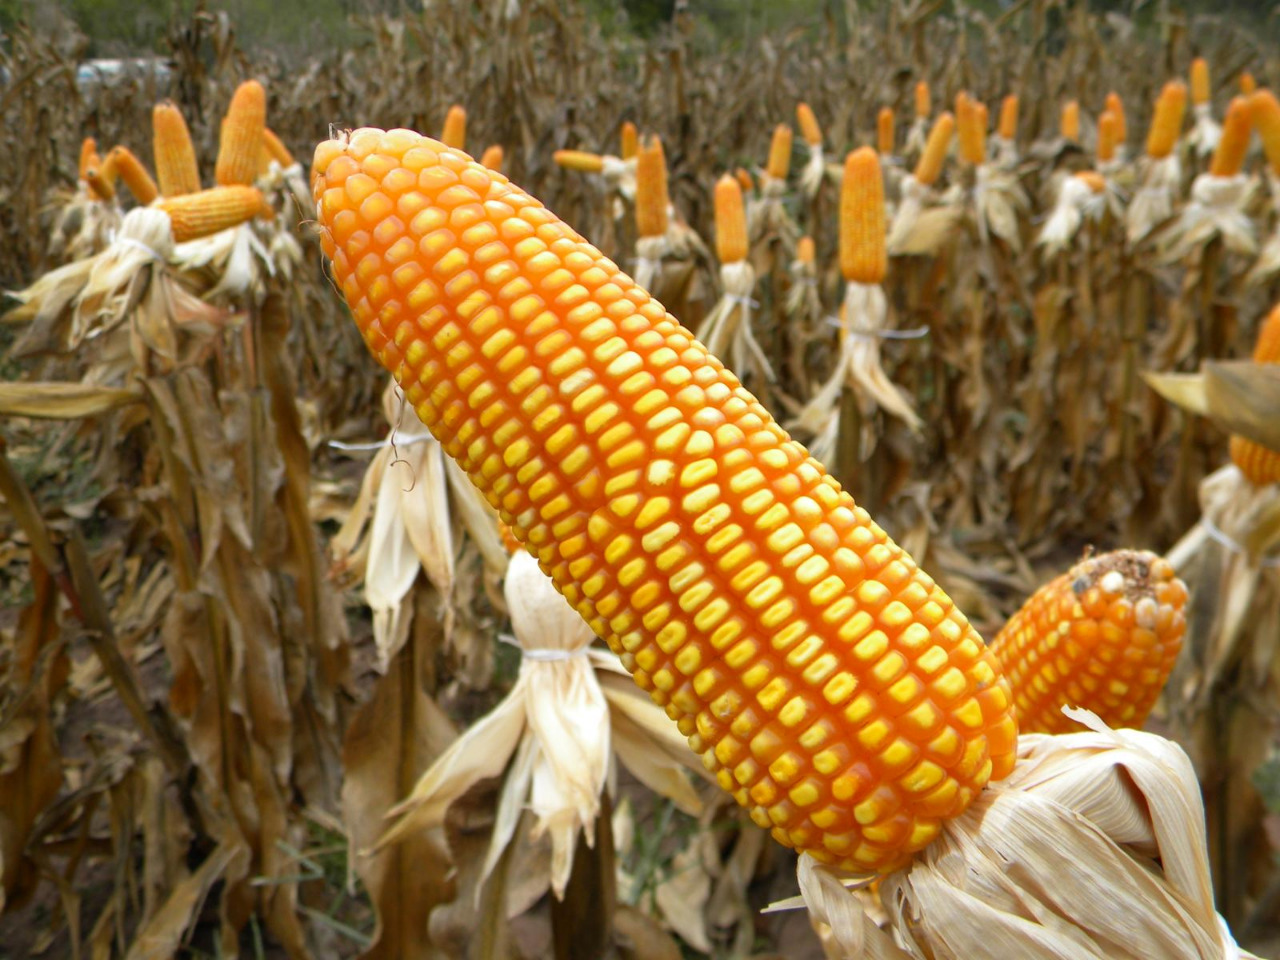 Previsión de cosecha de maíz en EEUU revisada a la baja - La Razón